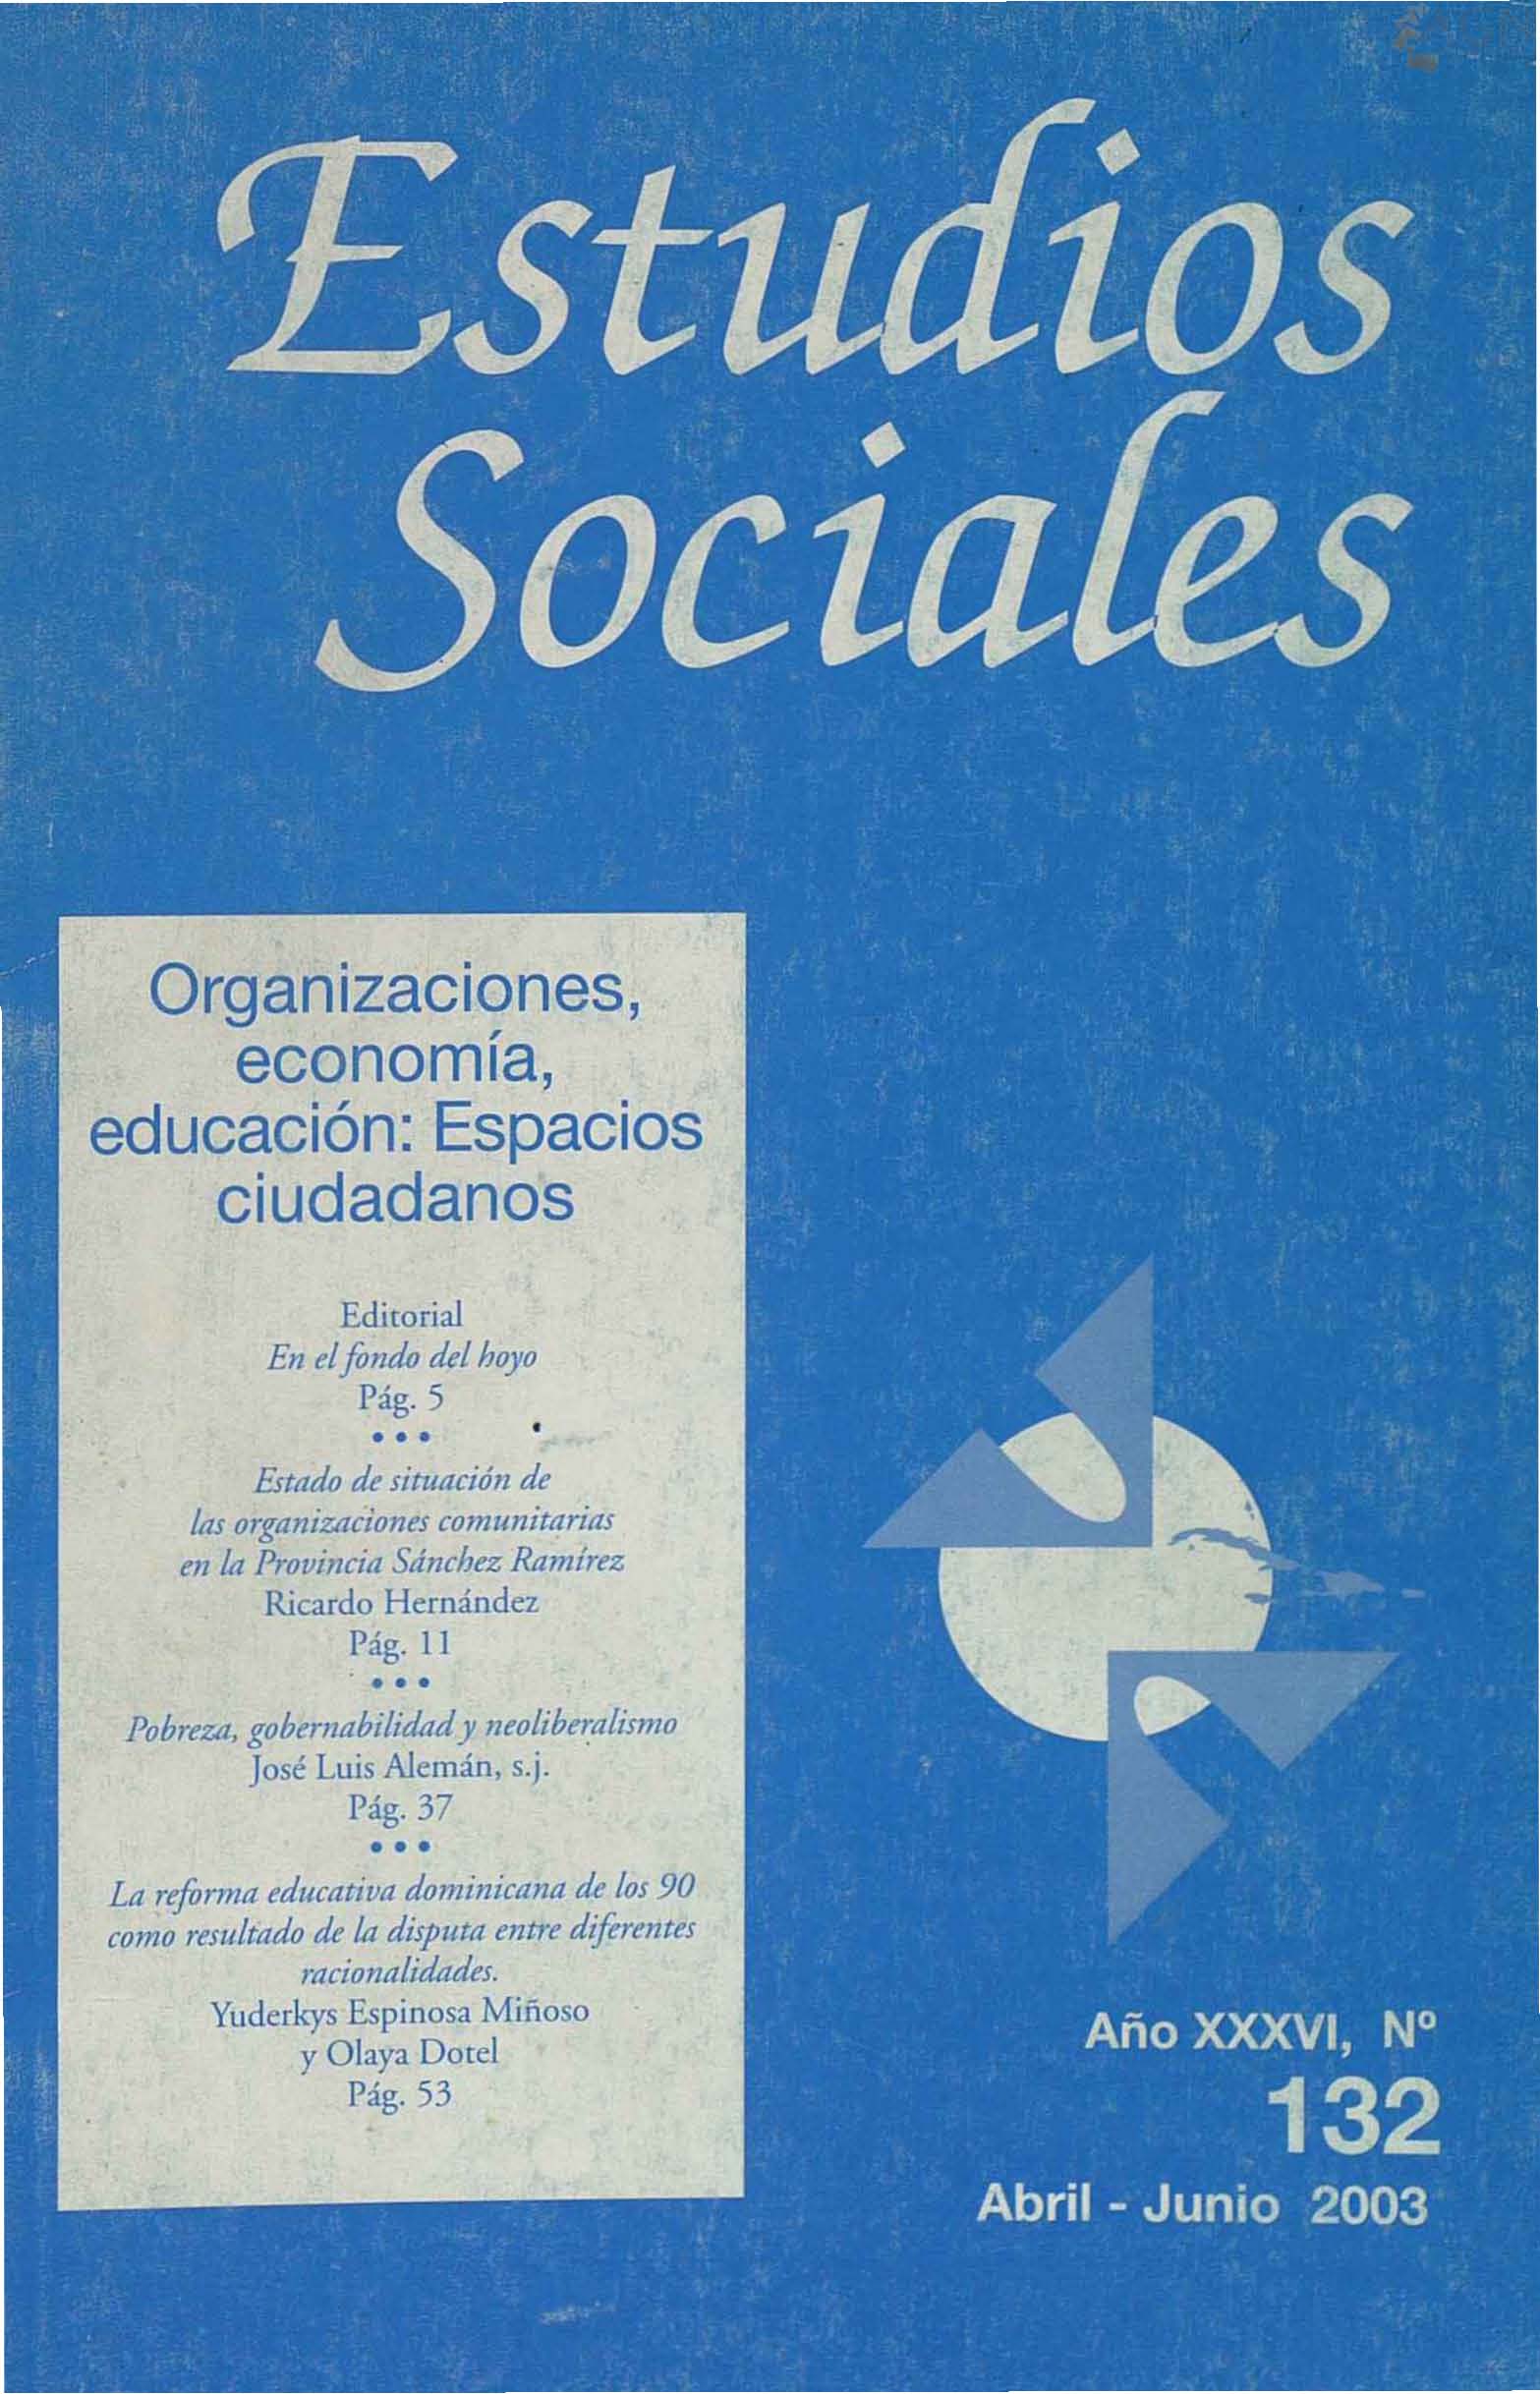 						Afficher Vol. 36 No 132 (2003): Organizaciones, economía, educación: Espacios Ciudadanos
					